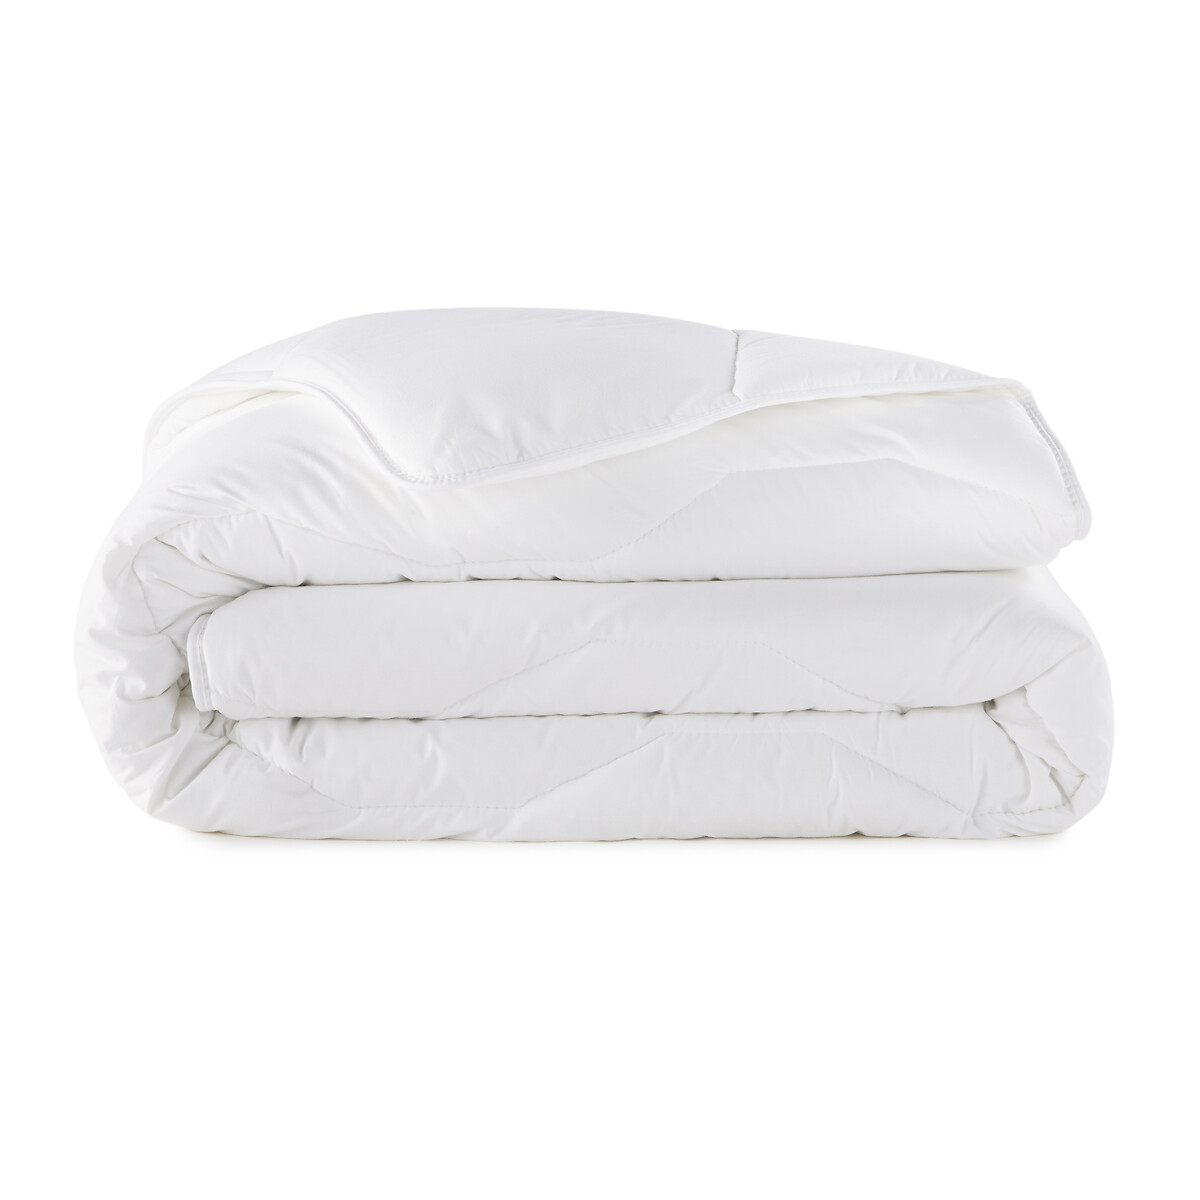 Одеяло La Redoute Синтетическое Prestige Hollofil  гм 240 x 220 см белый, размер 240 x 220 см - фото 2